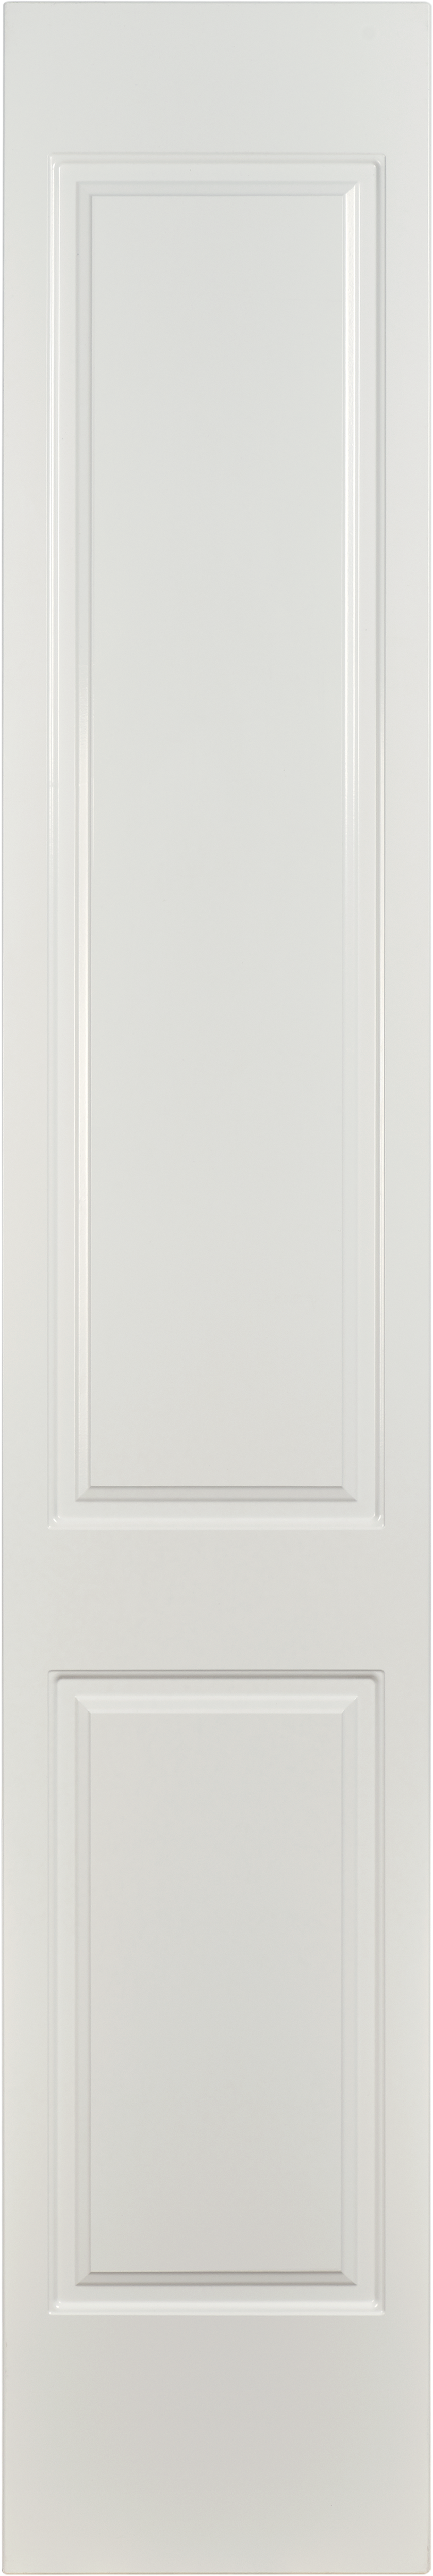 Puerta abatible para armario marsella blanco 40x240x1,9 cm